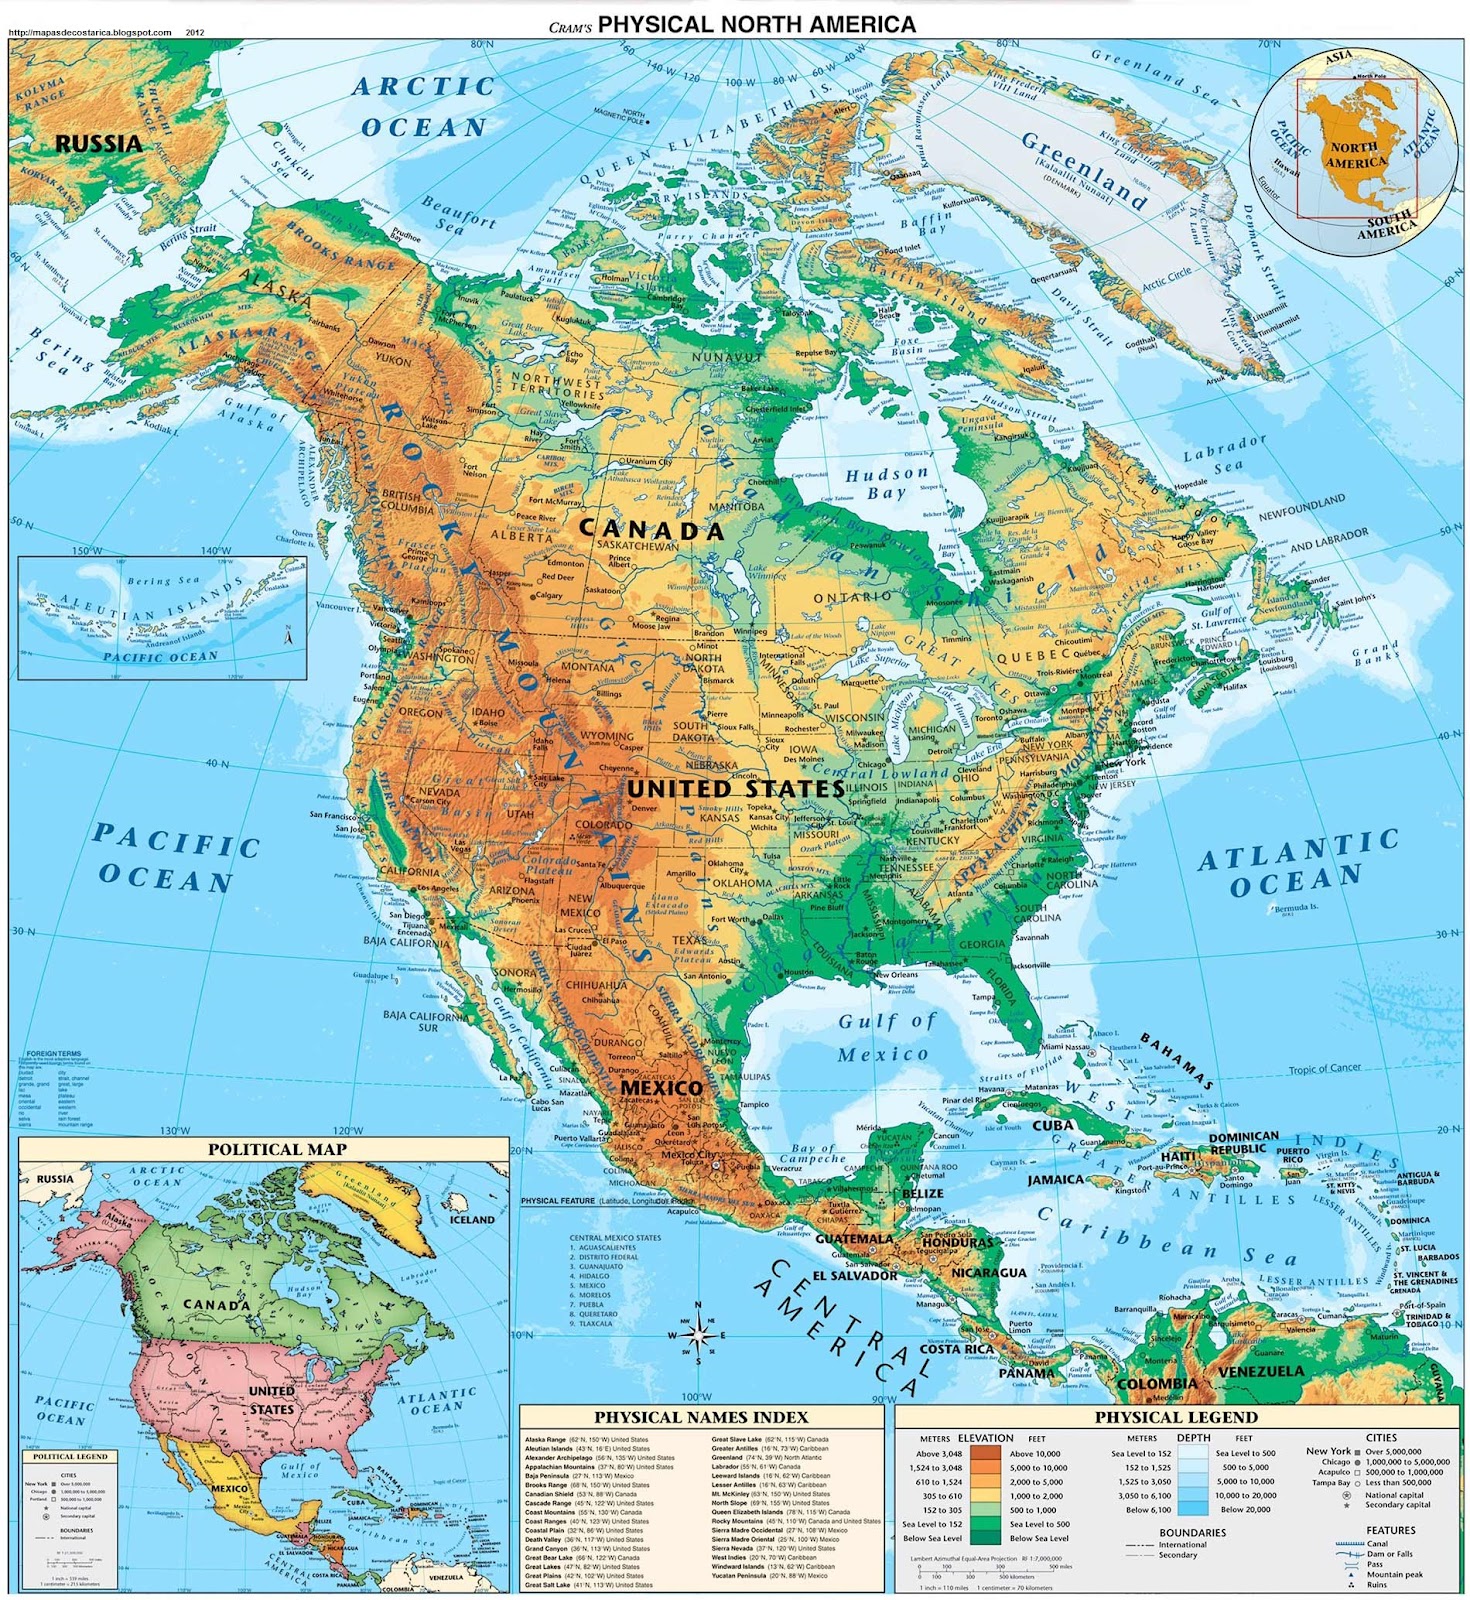 Mapa Fisico de America del Norte (Norteamerica)